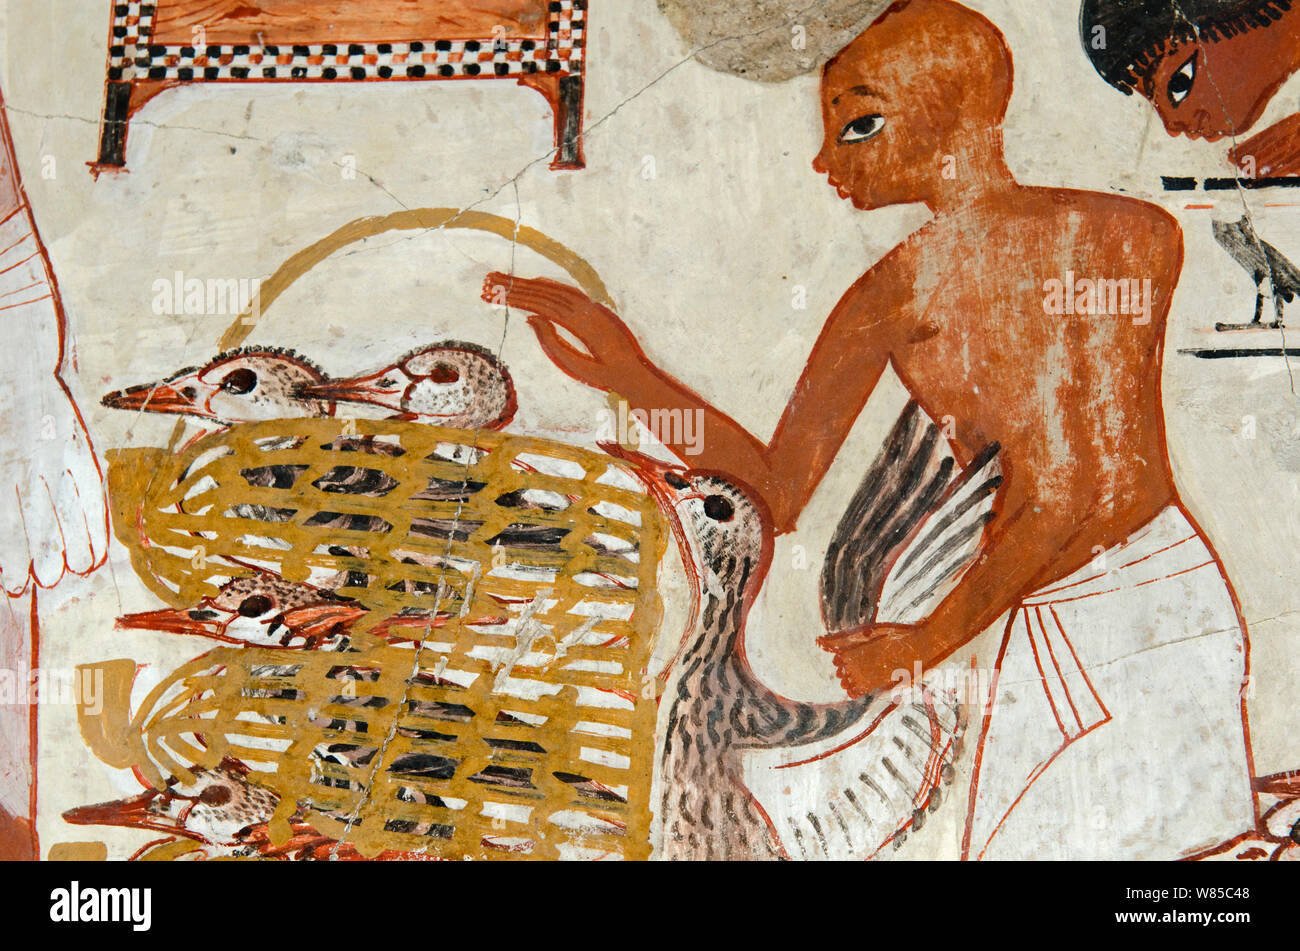 Peinture de la tombe de mur Nebamun, Thèbes, Égypte. L'inspection des troupes de Nebamun montrant des oies et des troupeaux de bétail. À partir de la fin du xviiie dynastie, autour de 1350 BC. Banque D'Images